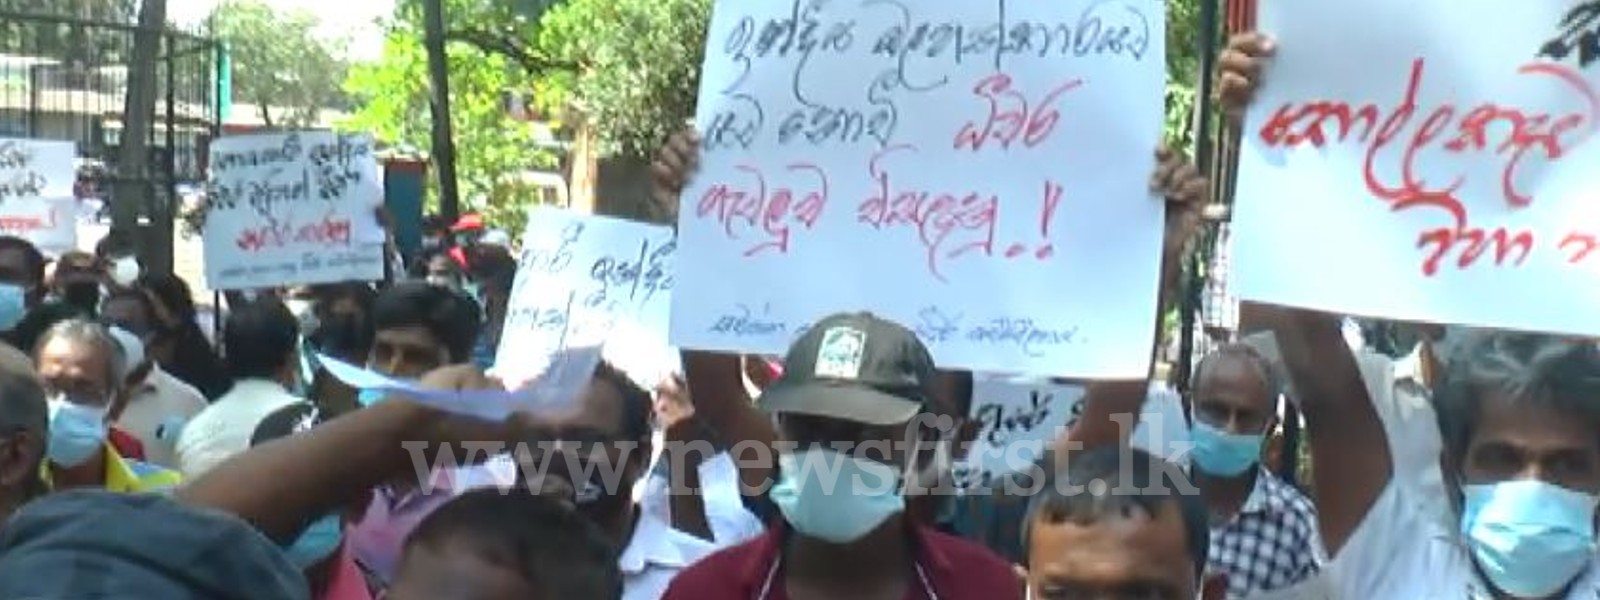 Lankan fishermen protest against Indian fishermen